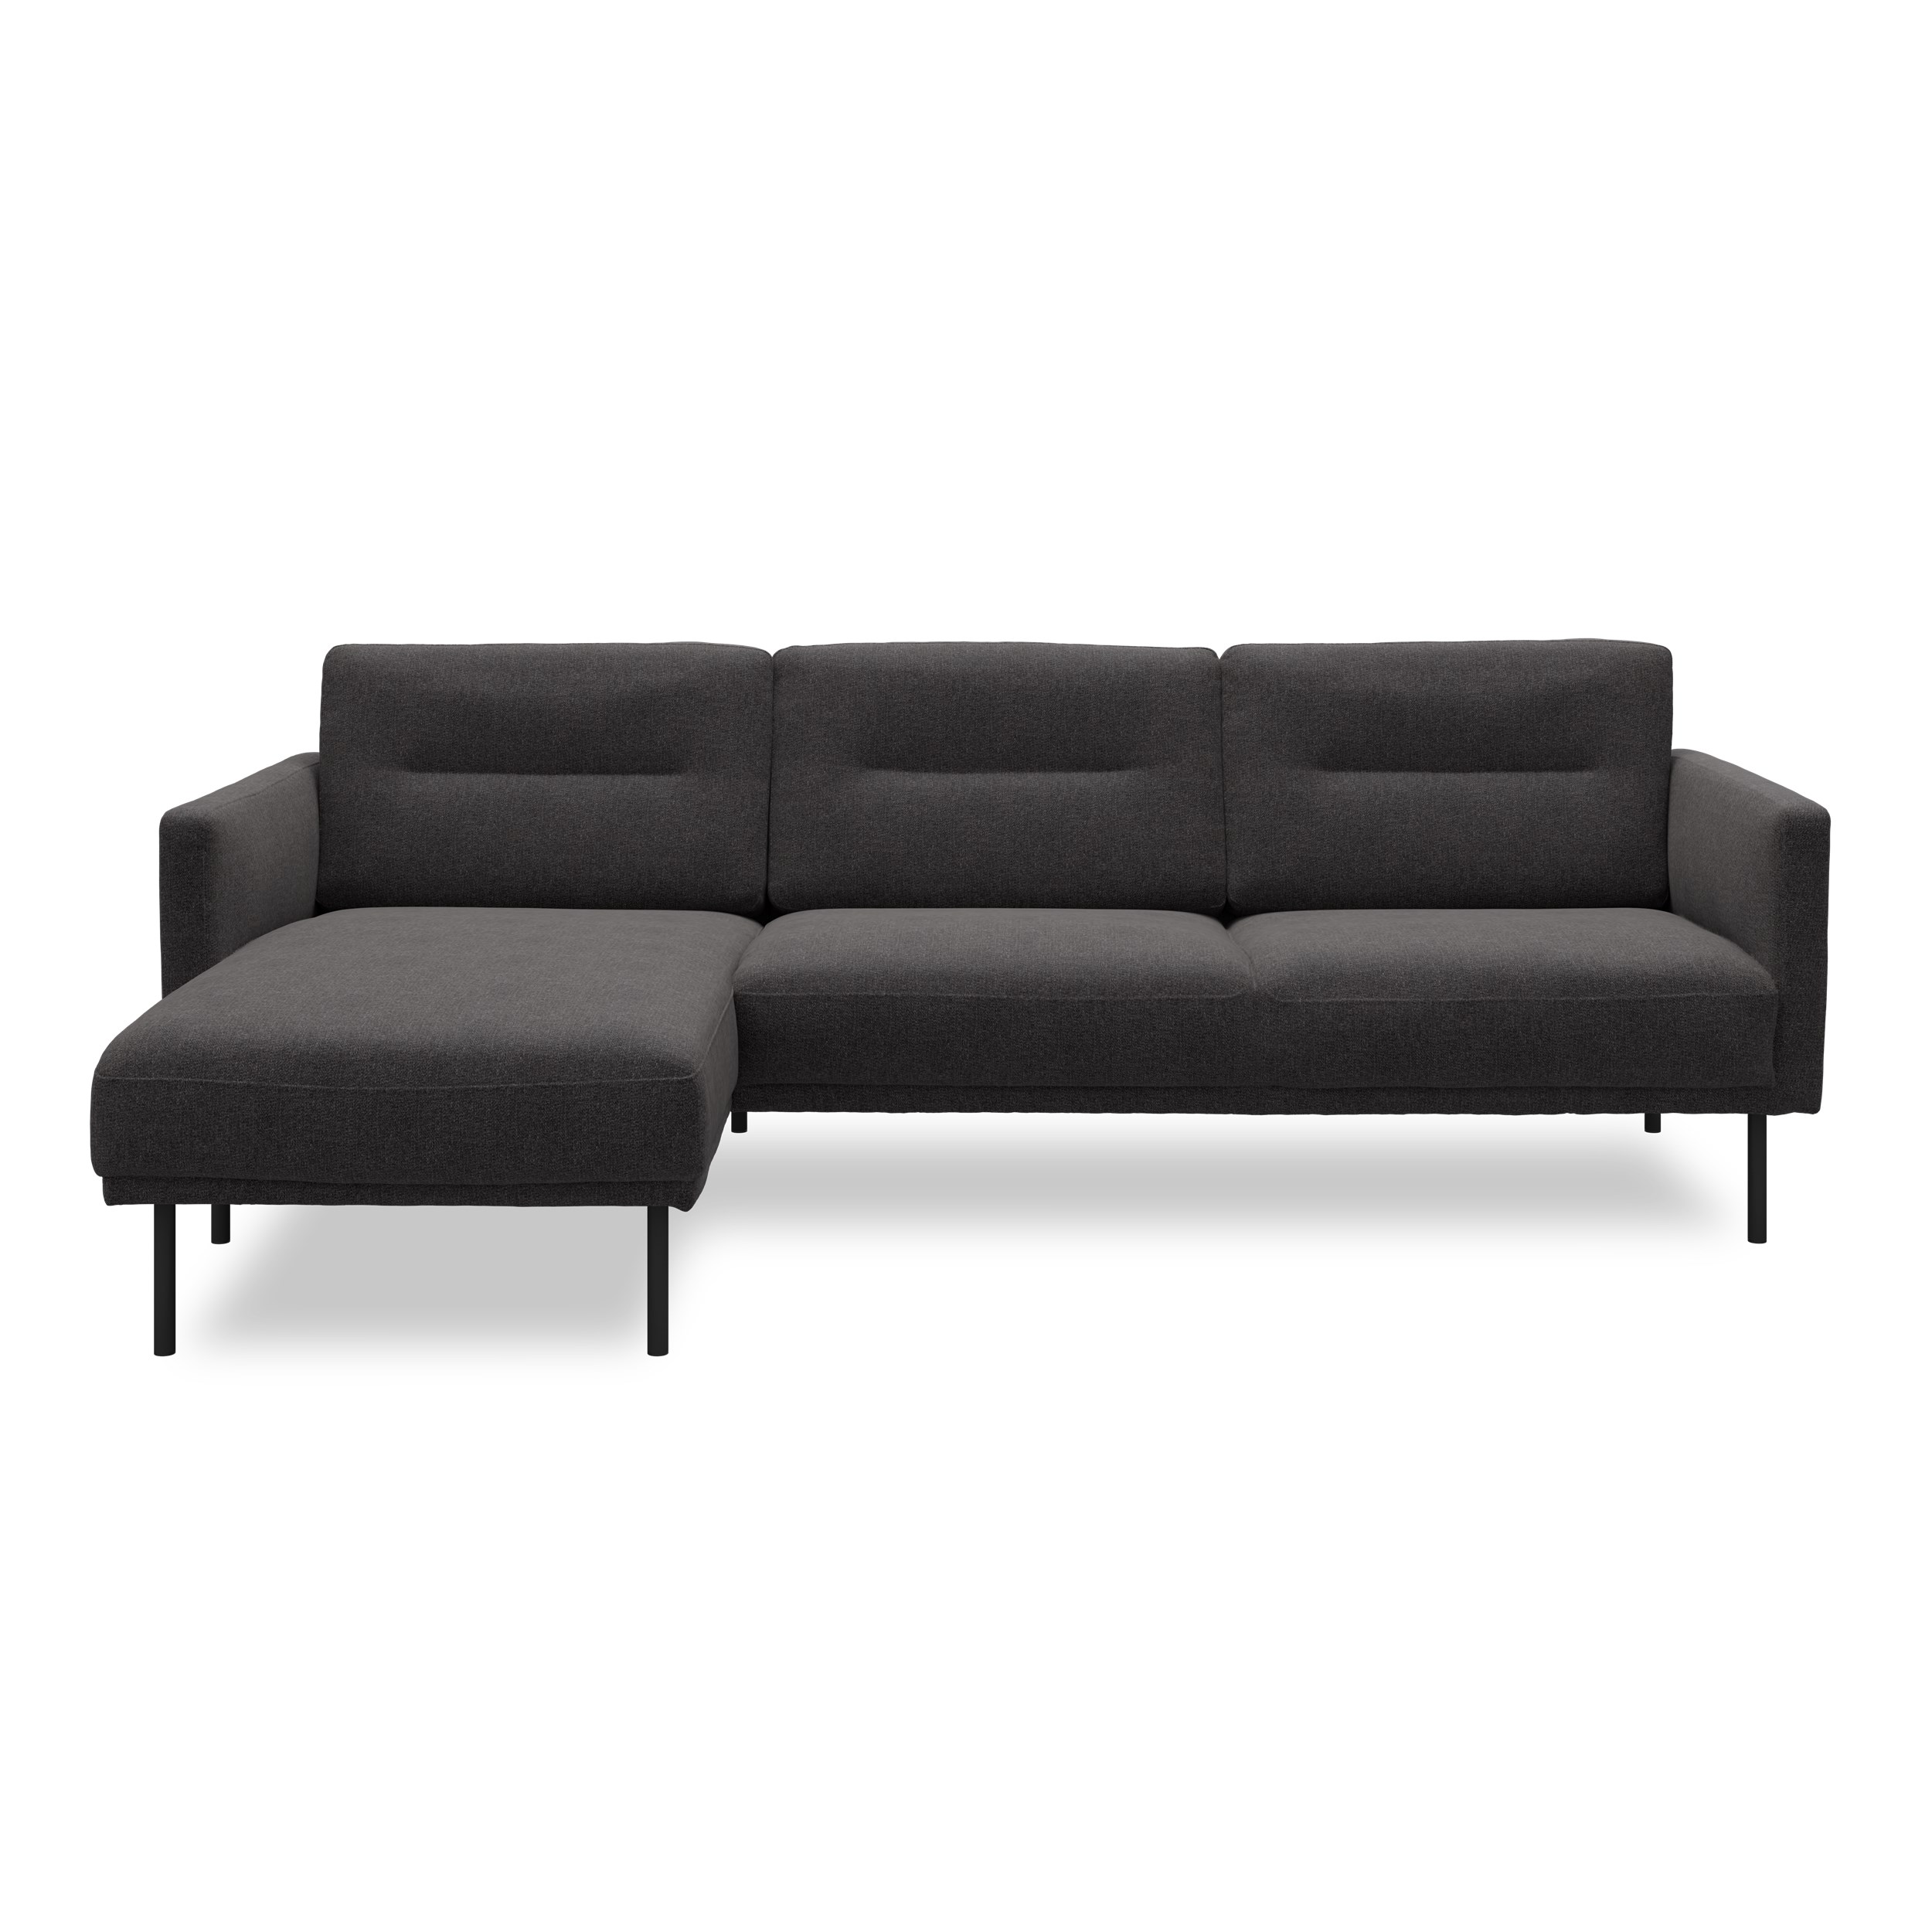 Larvik venstrevendt sofa med chaiselong - Hampton 370 Antracite stof og ben i sortlakeret metal